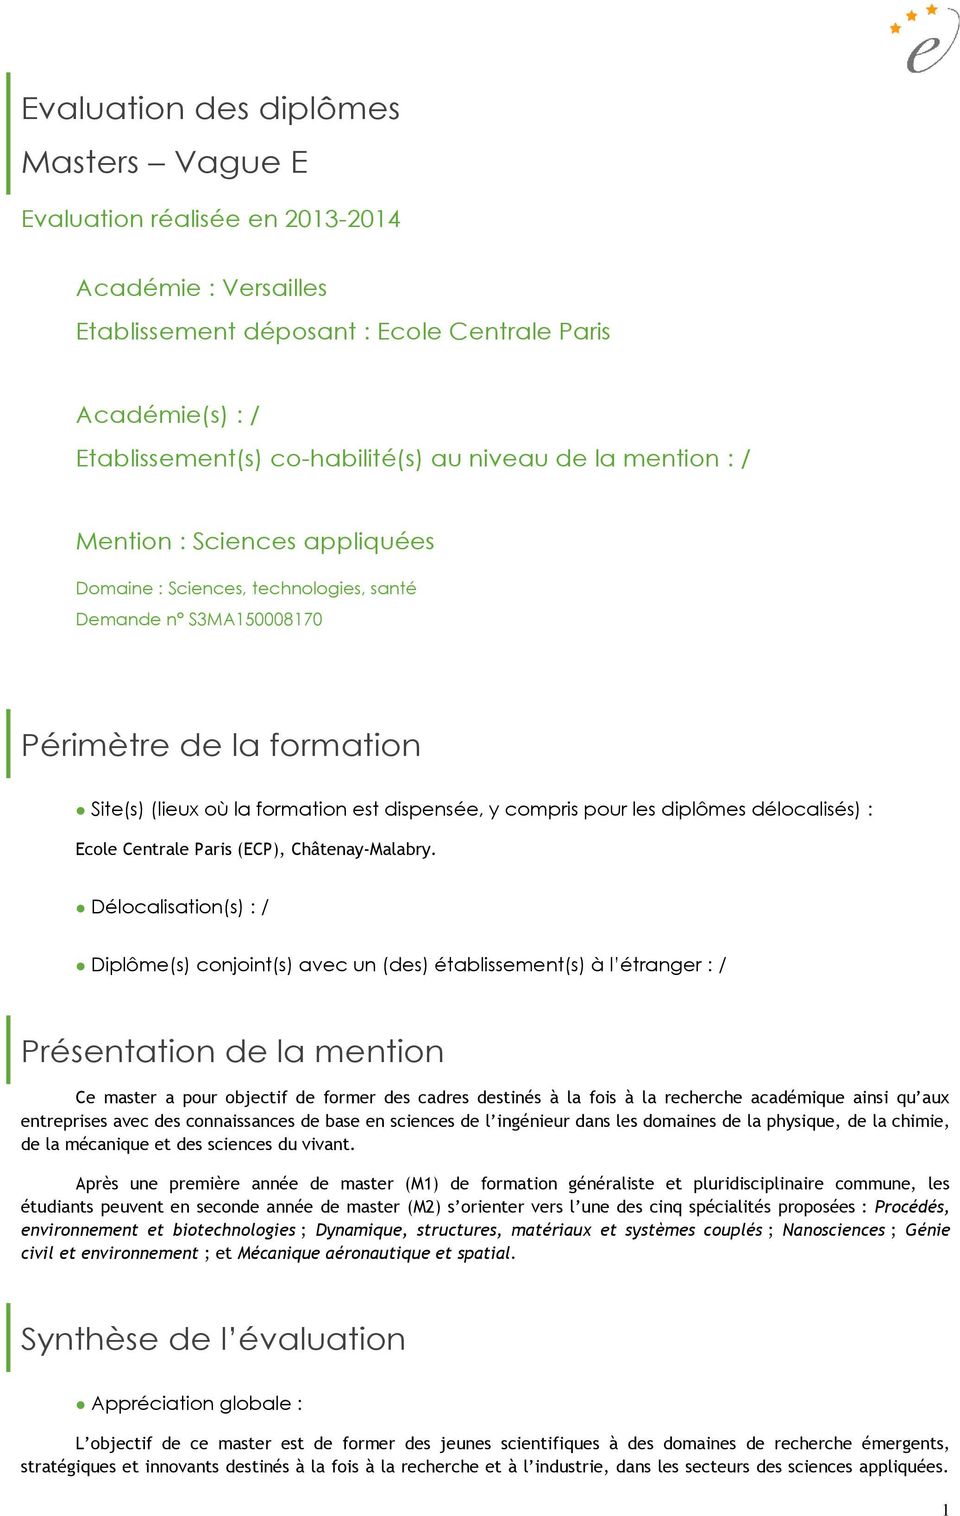 les diplômes délocalisés) : Ecole Centrale Paris (ECP), Châtenay-Malabry.